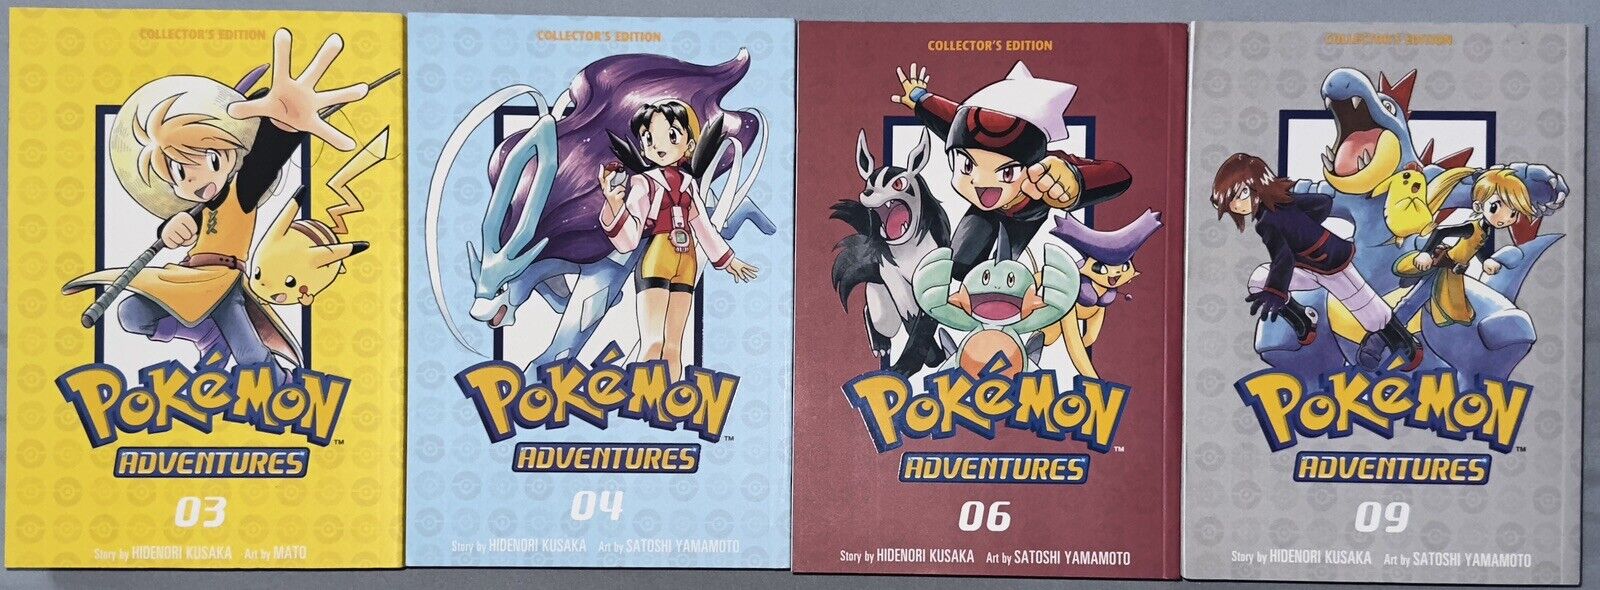 Pokemon Adventures Collectors Edition